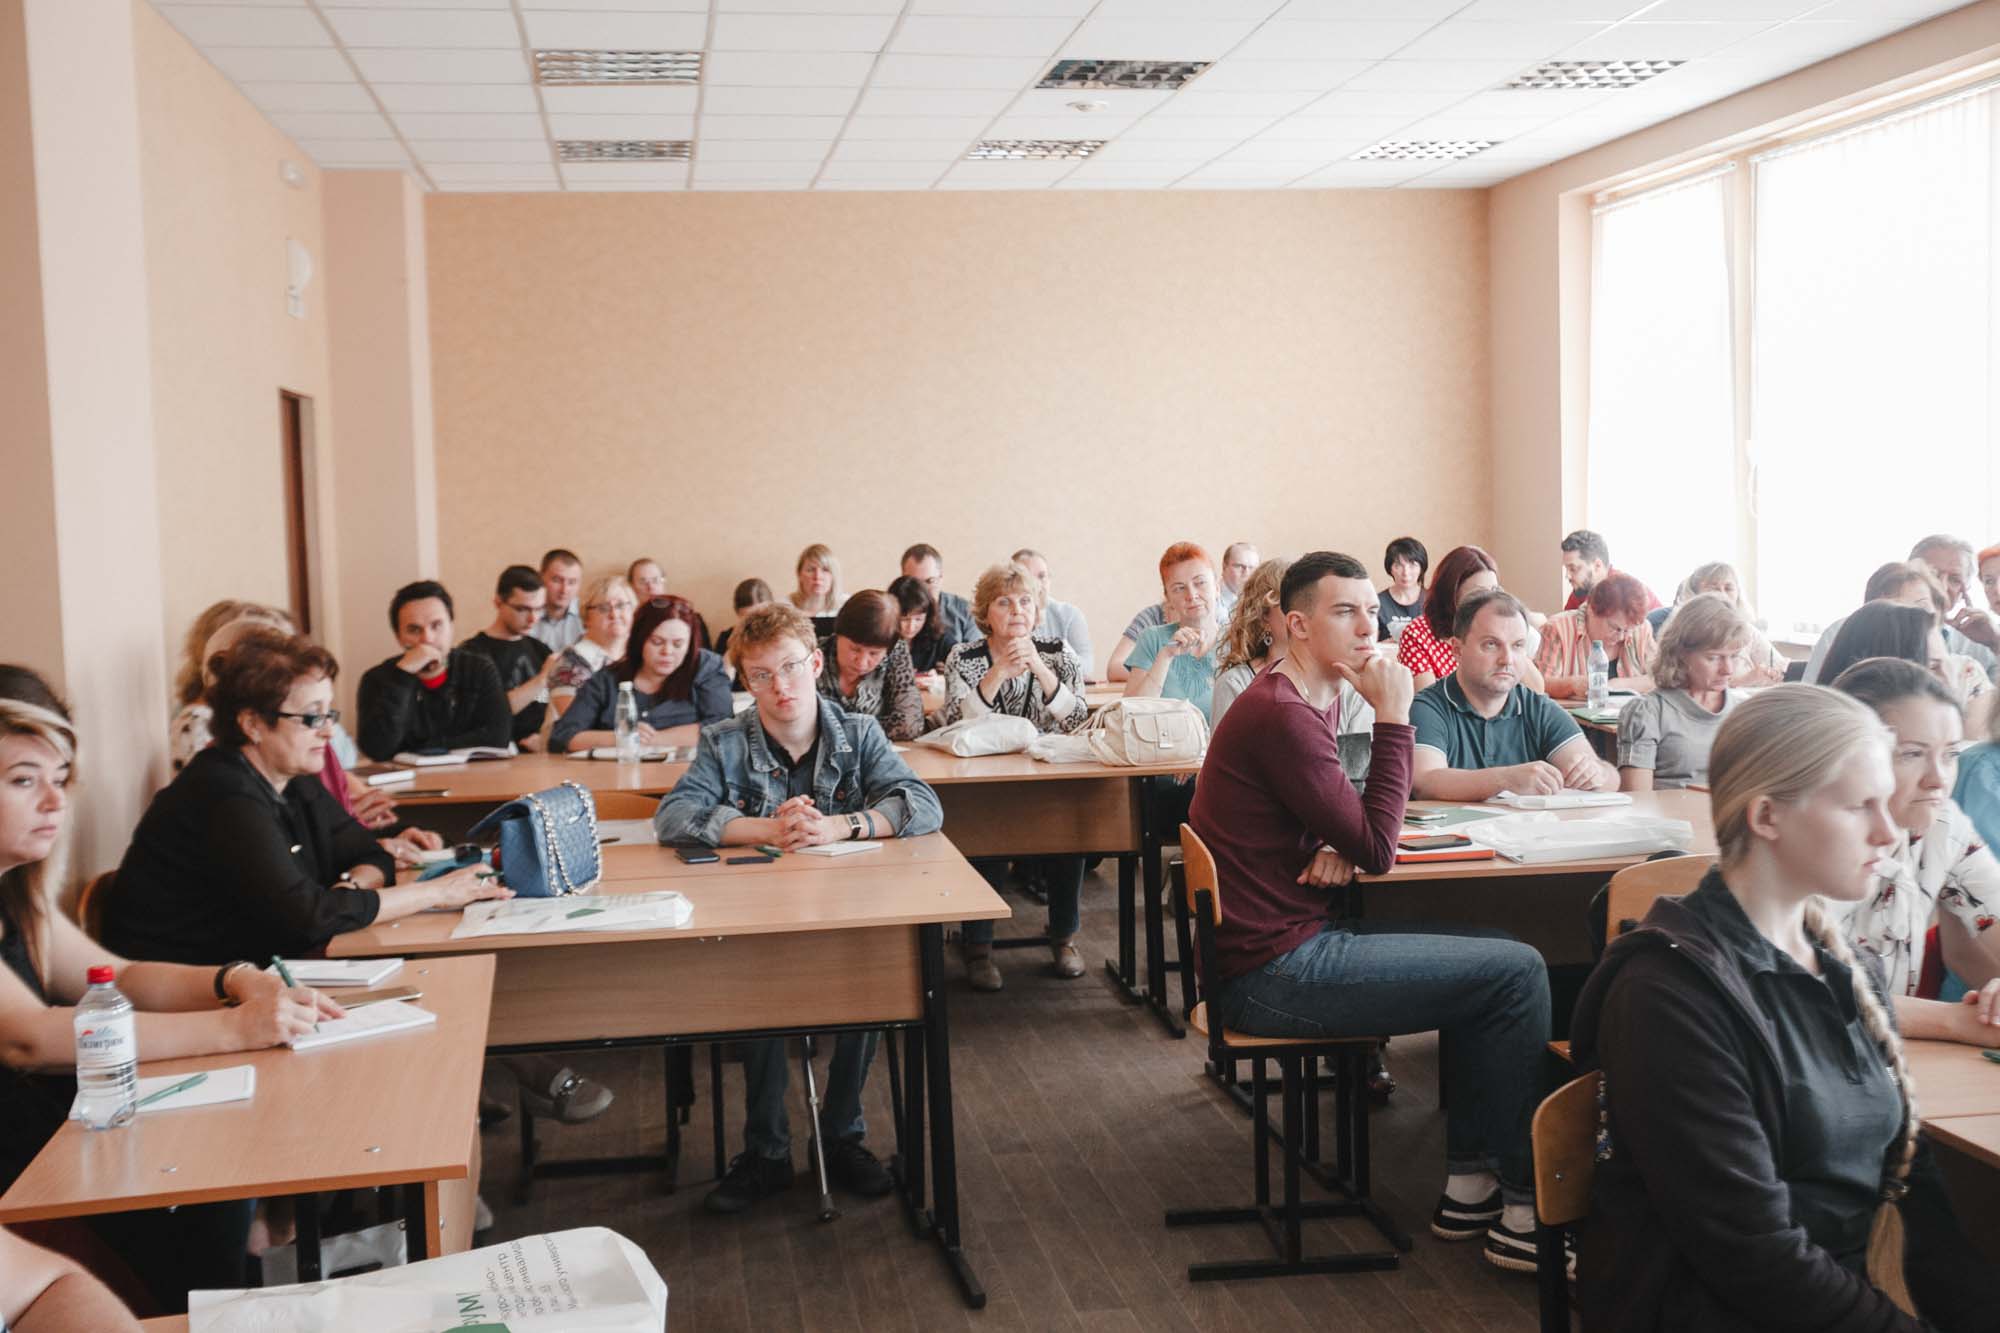 Вузы-партнеры РУМЦ Мининского университета Нижегородской области встретились на дискуссионной площадке по вопросам содействия трудоустройства выпускников вузов с ОВЗ и инвалидностью